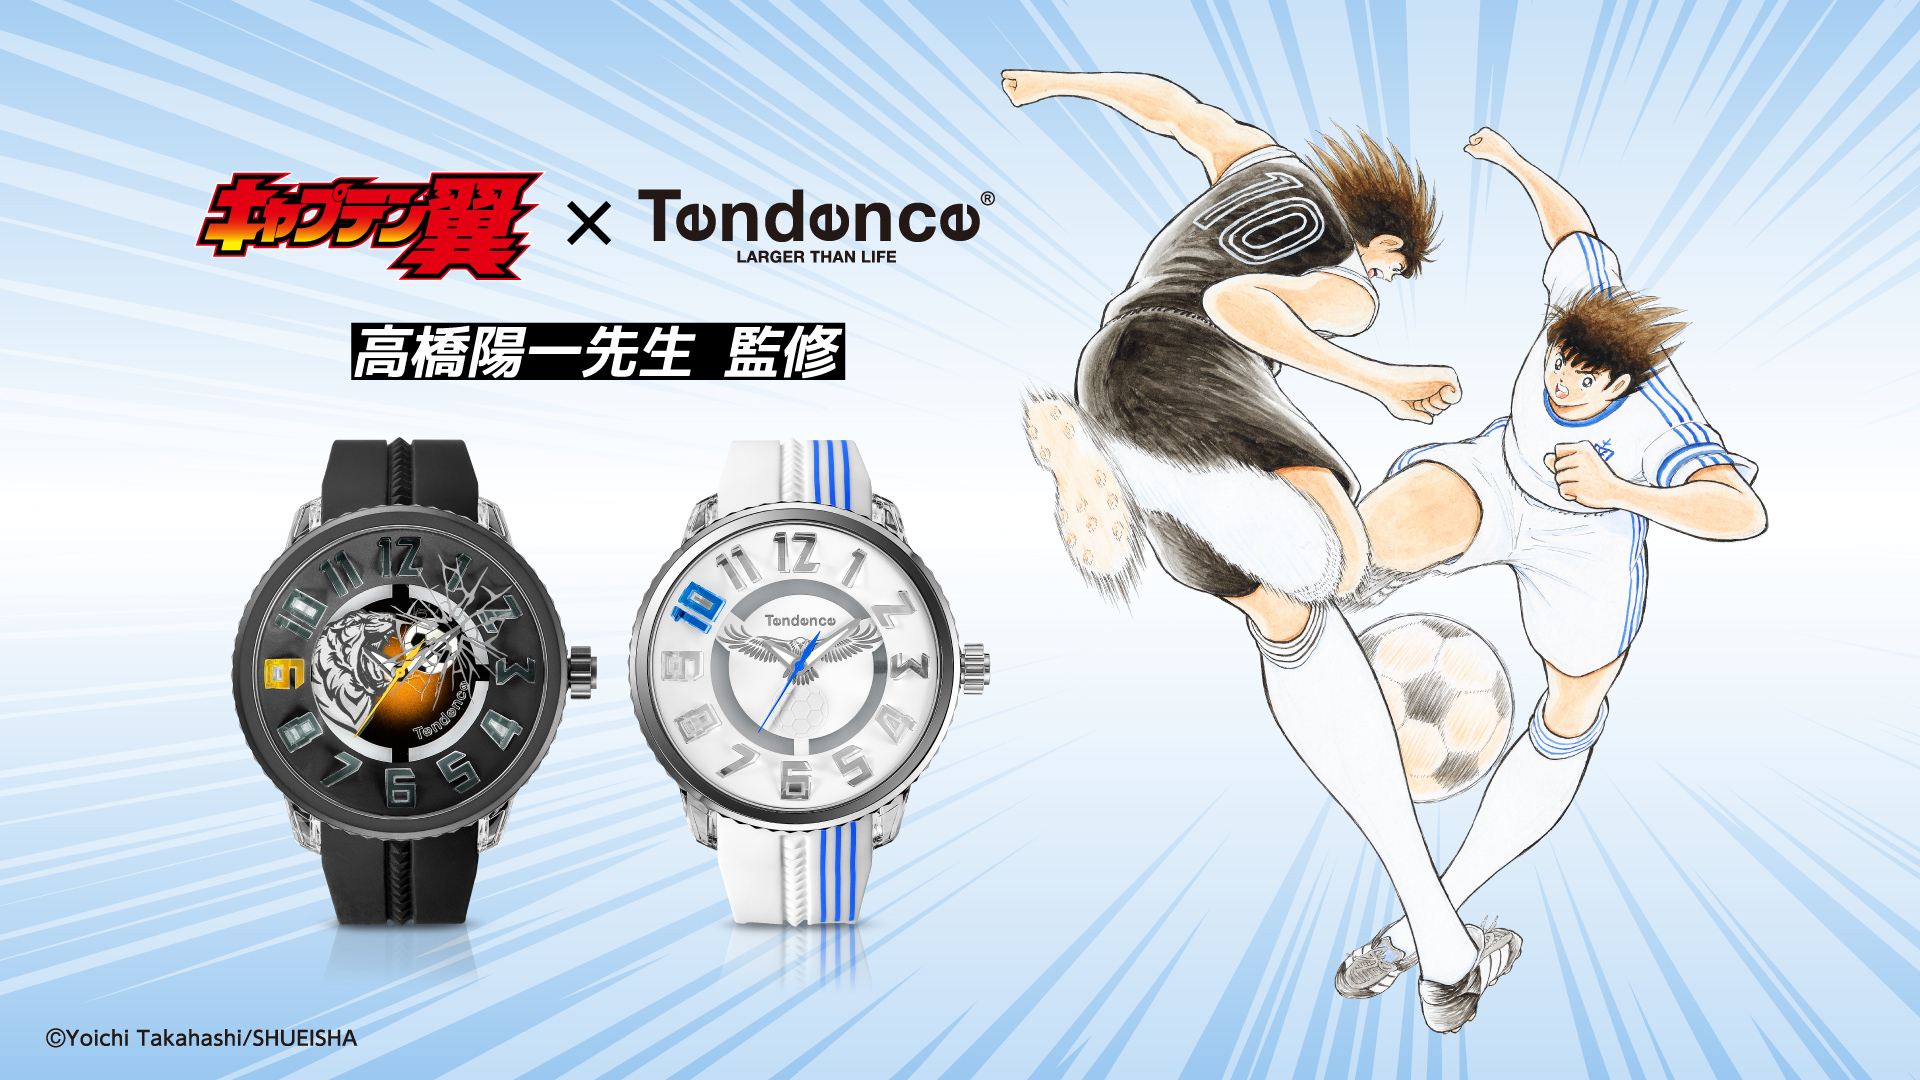 ブランド創設15周年を迎えるスイスの腕時計ブランド「Tendence